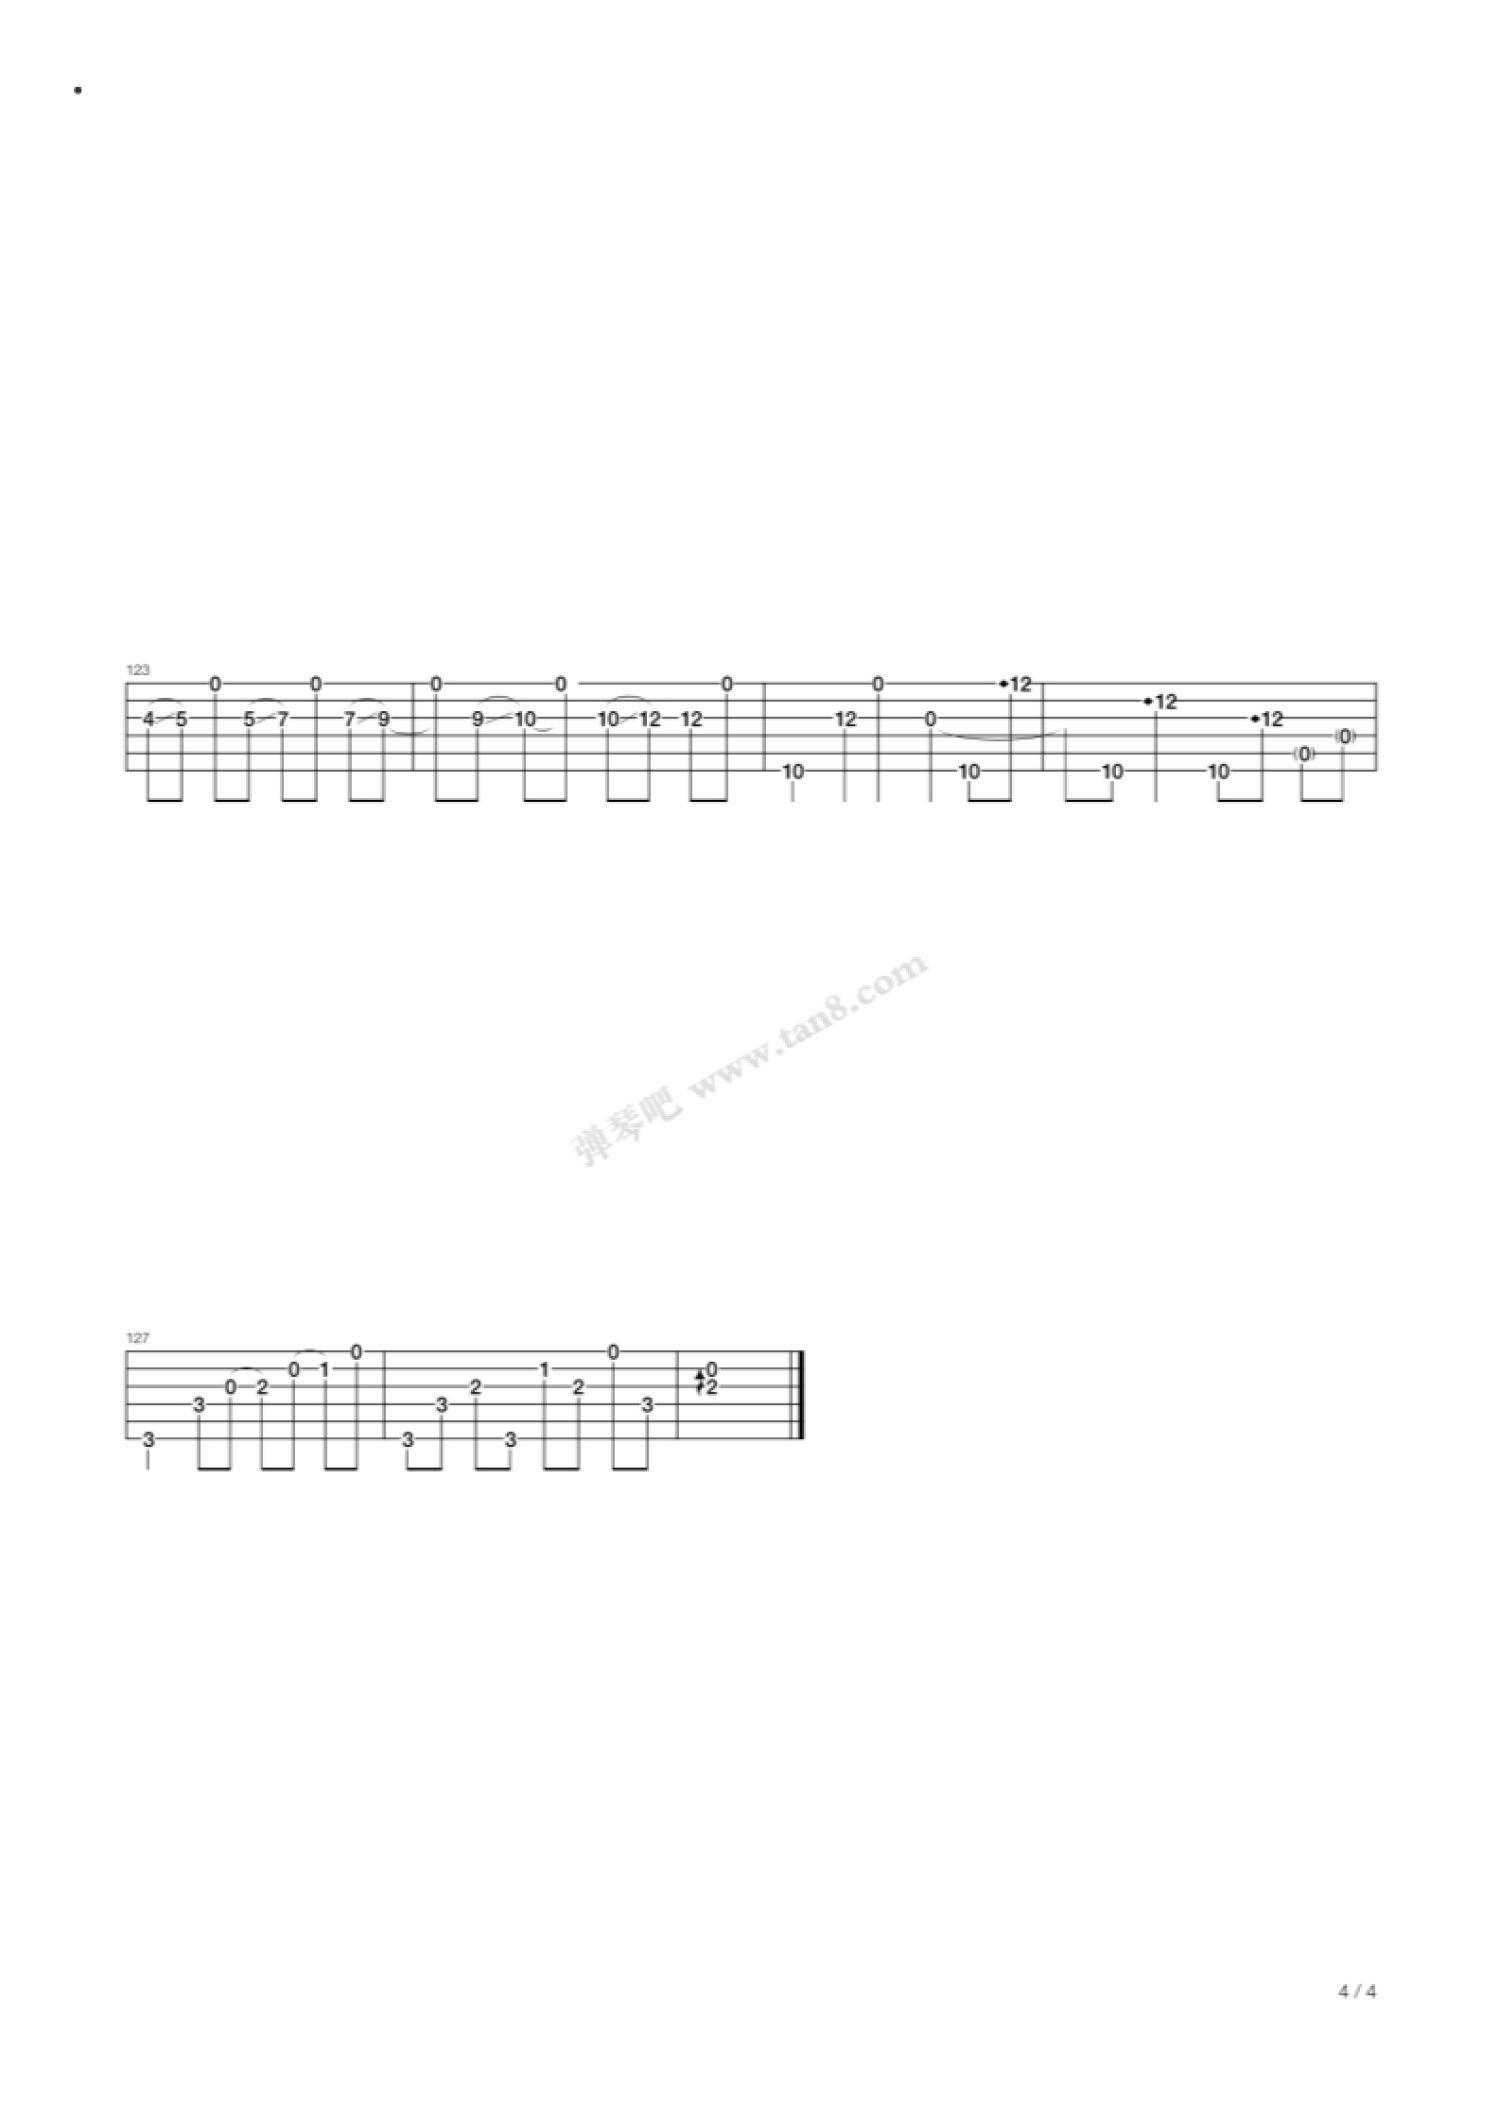 郑成河吉他谱【Blackbird】高清版-吉他曲谱 - 乐器学习网